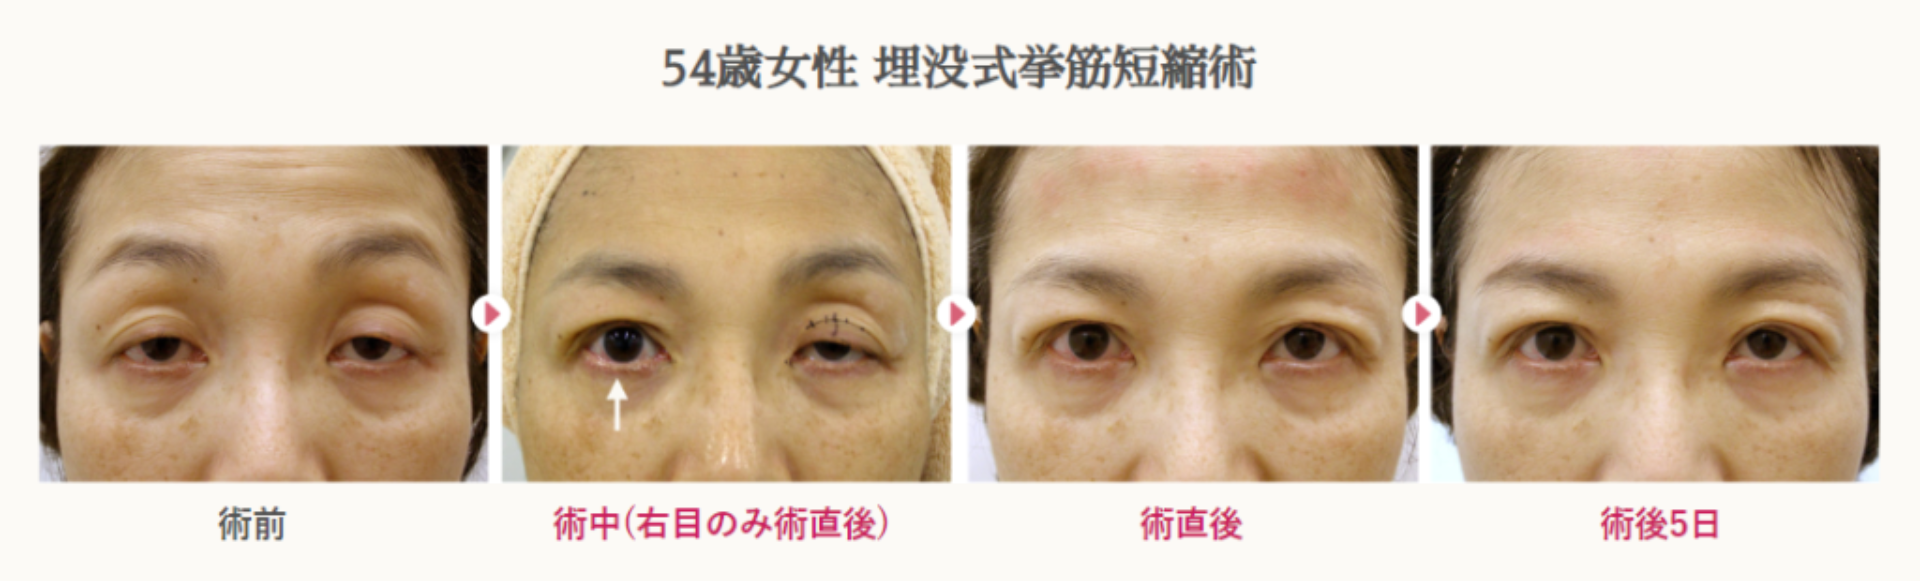 54歳女性の切らない眼瞼下垂による経過写真